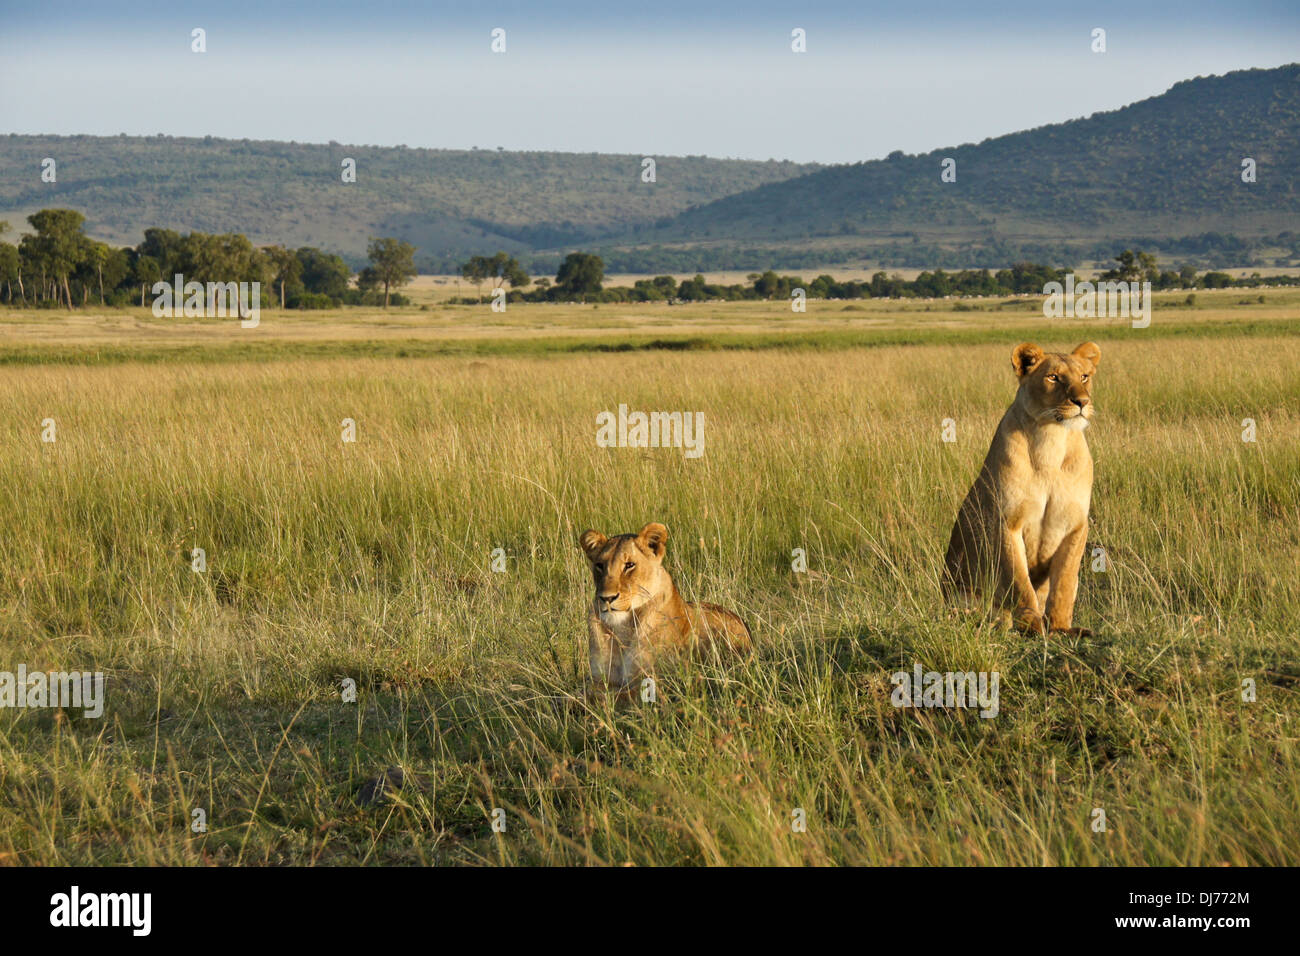 Deux lions sur termitière, Masai Mara, Kenya Banque D'Images